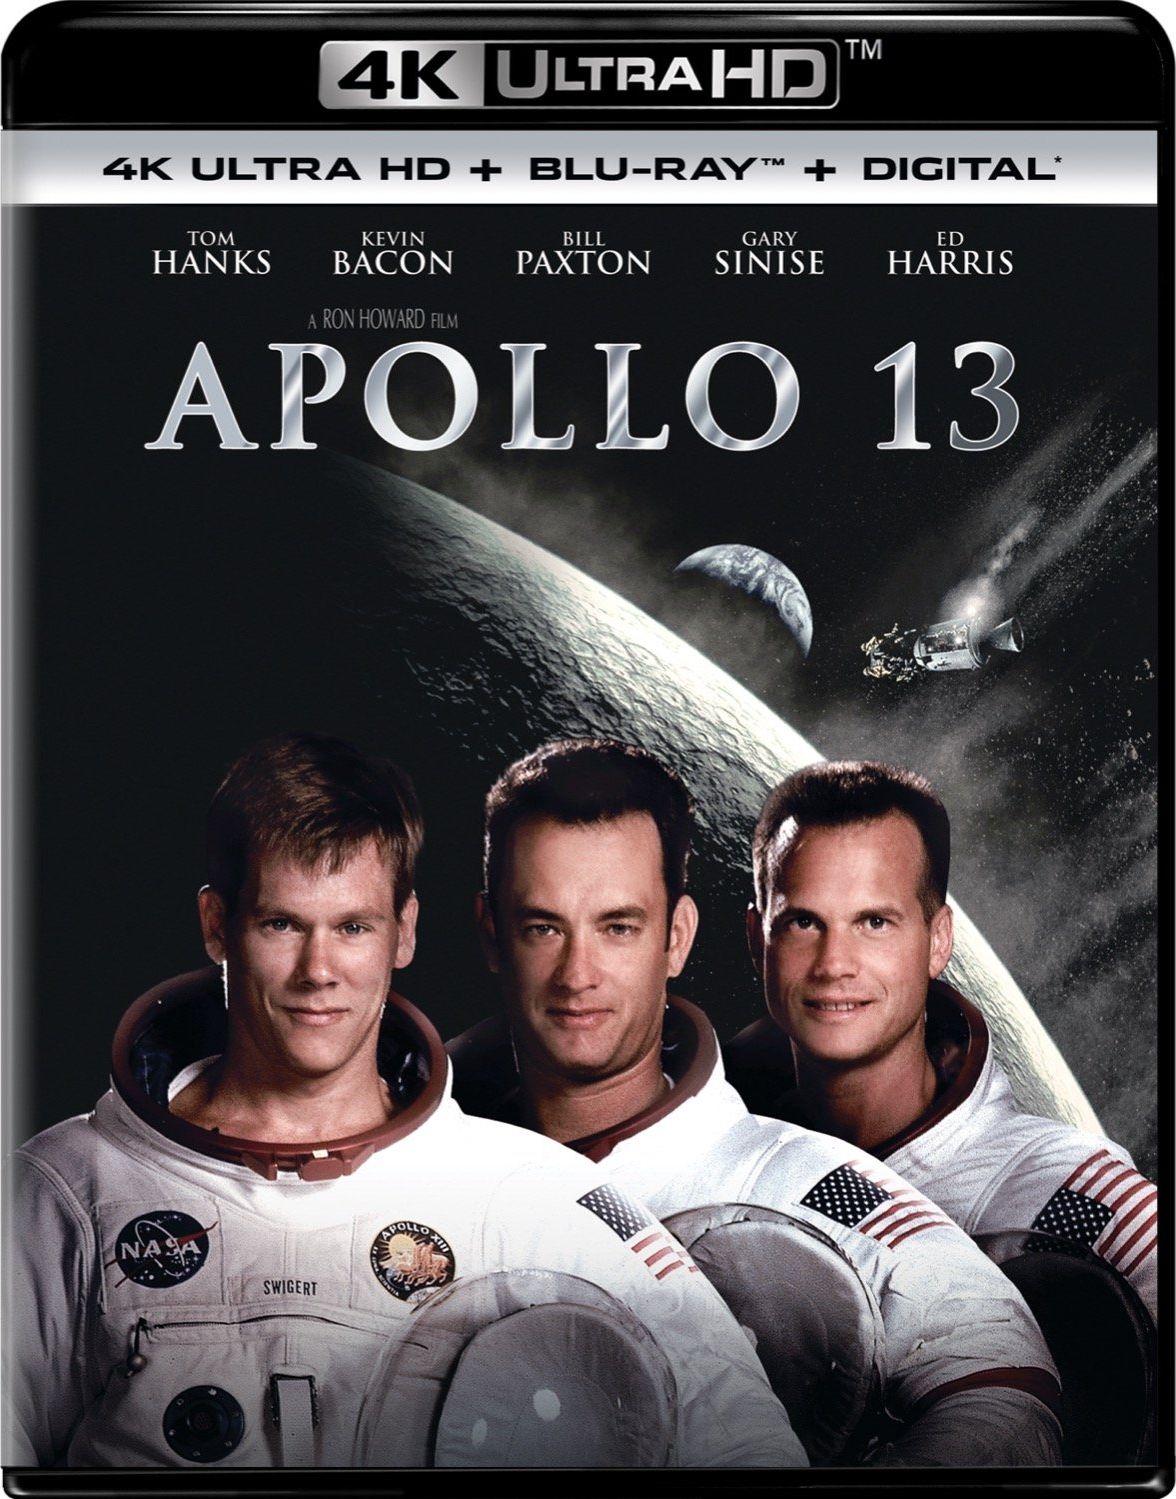 Apollo 13 DVD Release Date